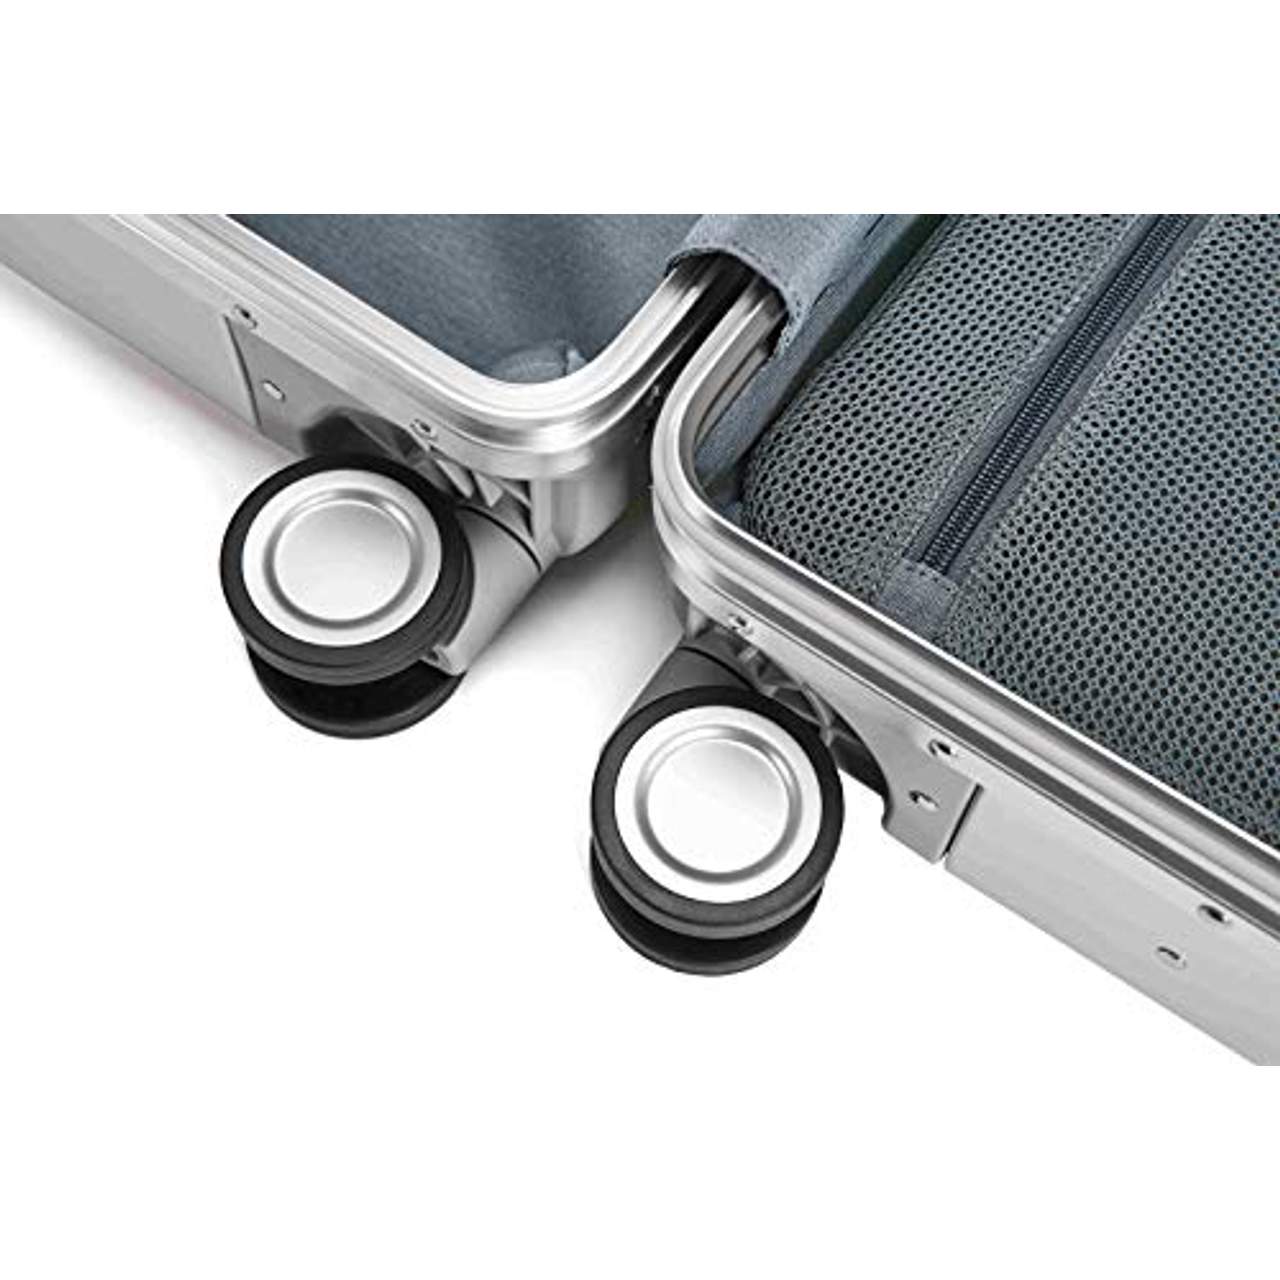 Xiaomi Mi Metal Carry-on Luggage 20"